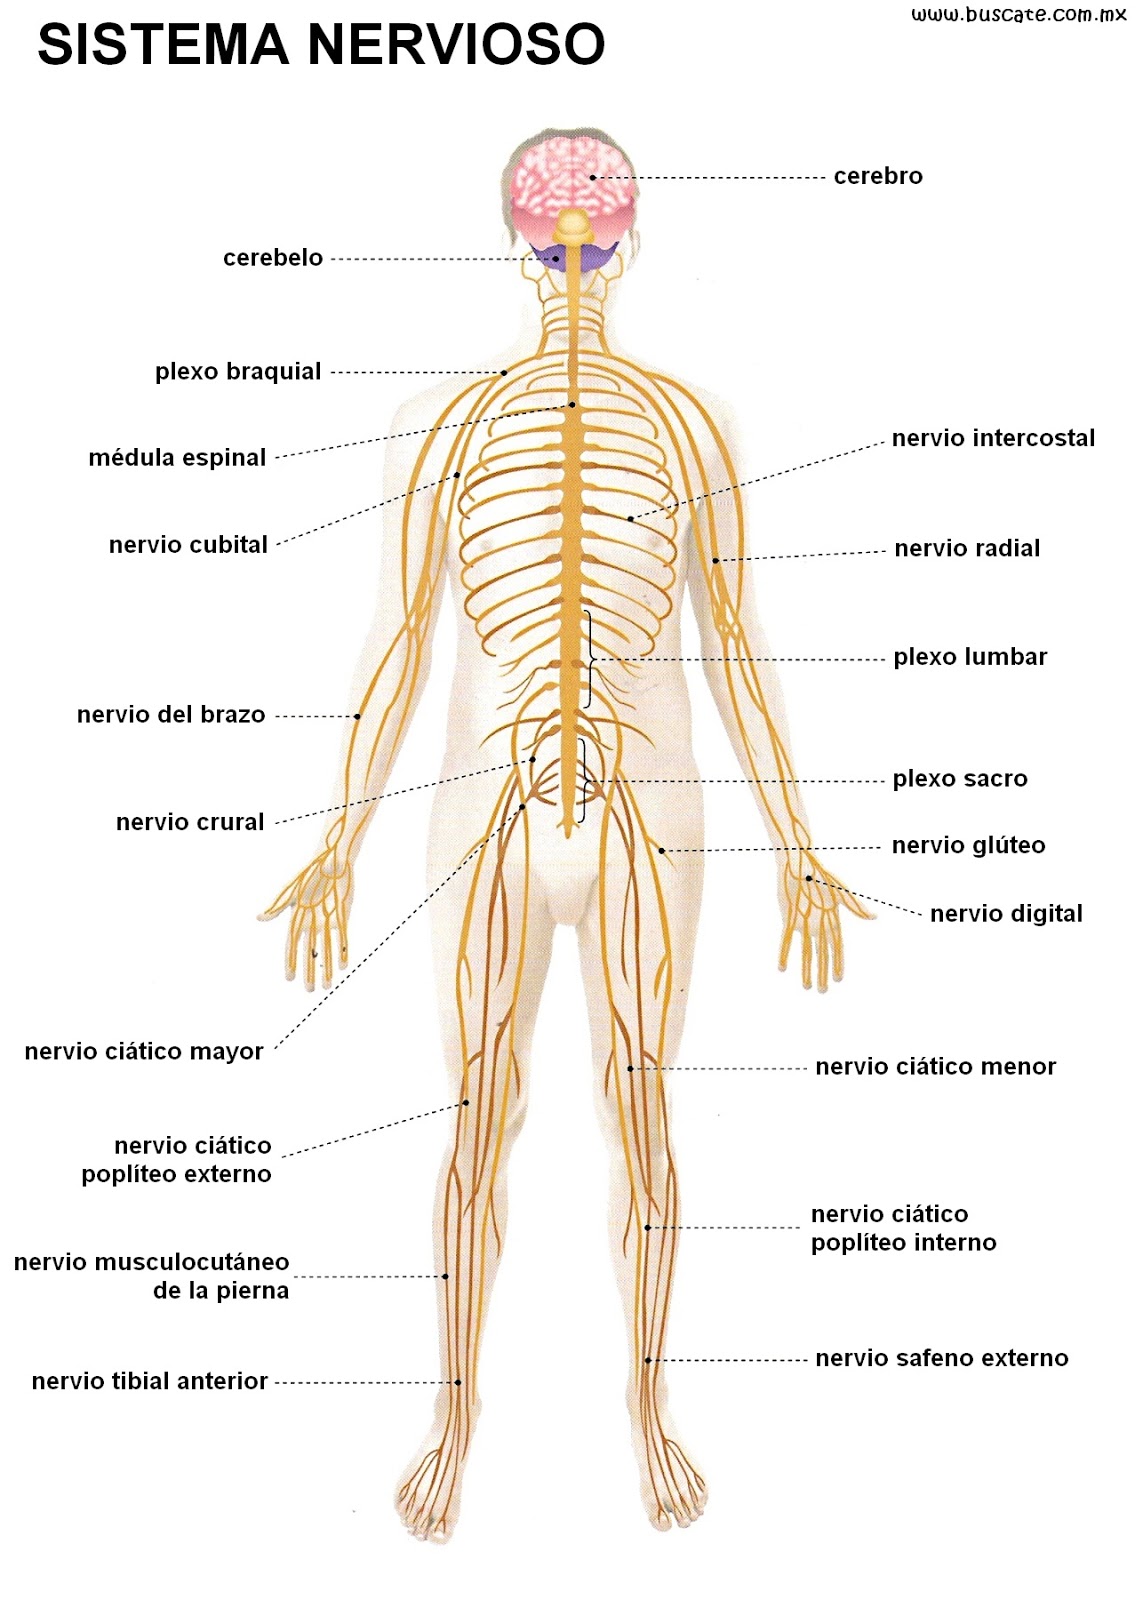 Resultado de imagen para sistema nervioso